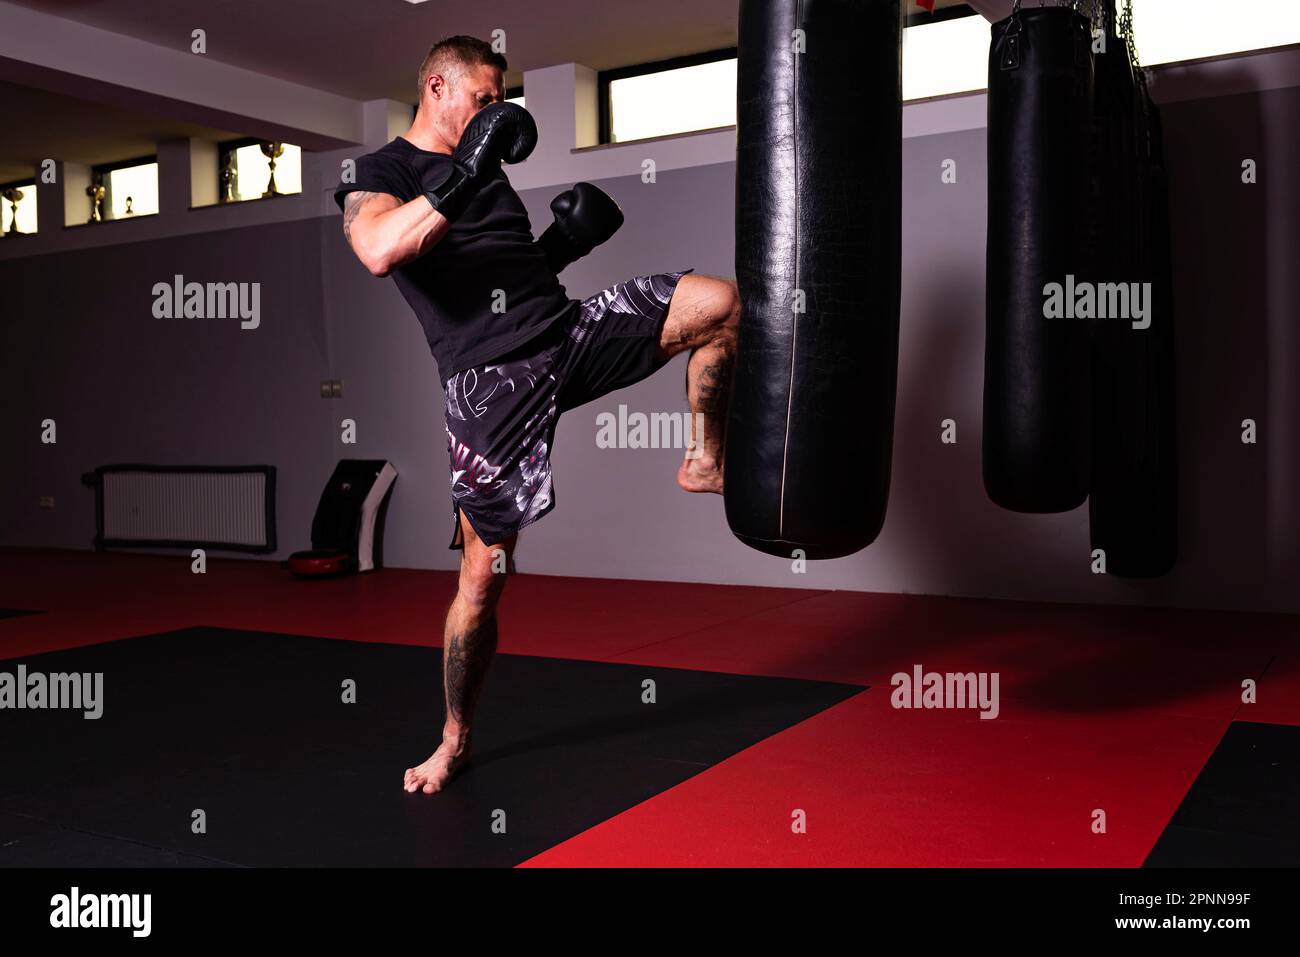 Ein junger Mann nimmt an einem Workout Teil und übt seine Boxfertigkeiten durch einen kräftigen Kick Stockfoto